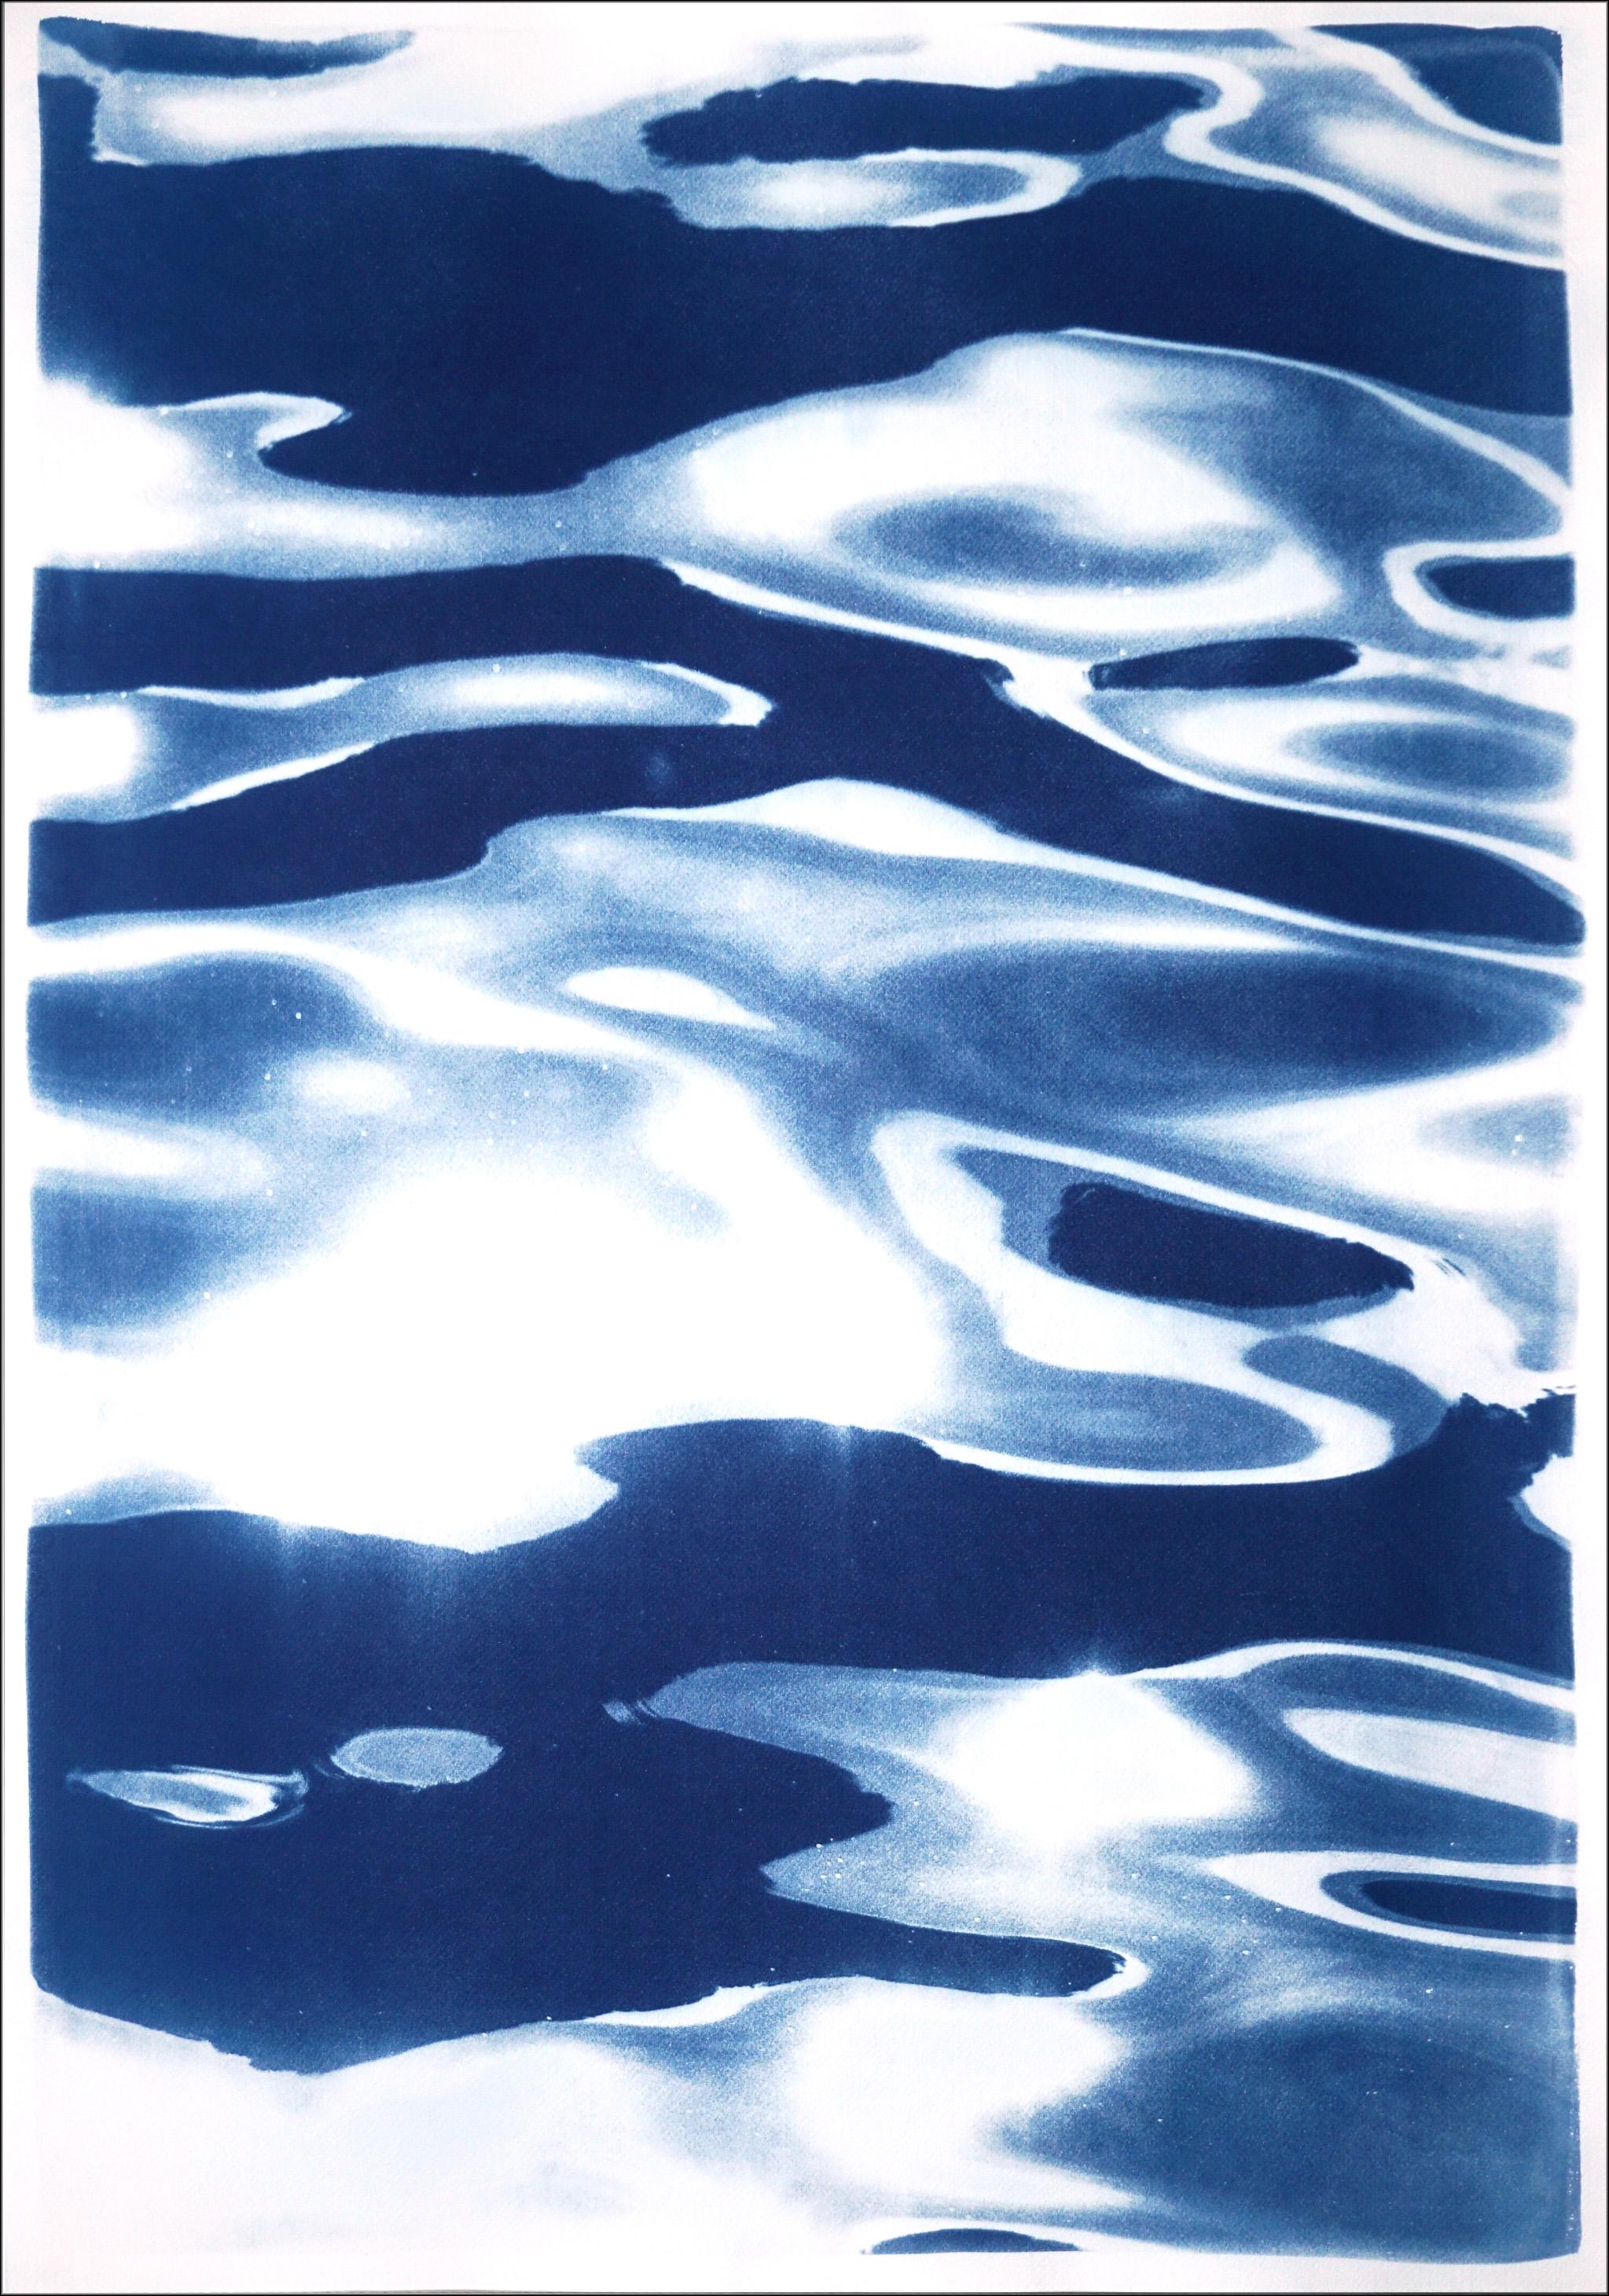 Cette série de triptyques en cyanotype met en valeur la beauté des scènes de la nature, notamment des plages et des océans magnifiques, ainsi que les textures complexes de l'eau, des forêts et des cieux. Ces triptyques sont de grandes pièces qui